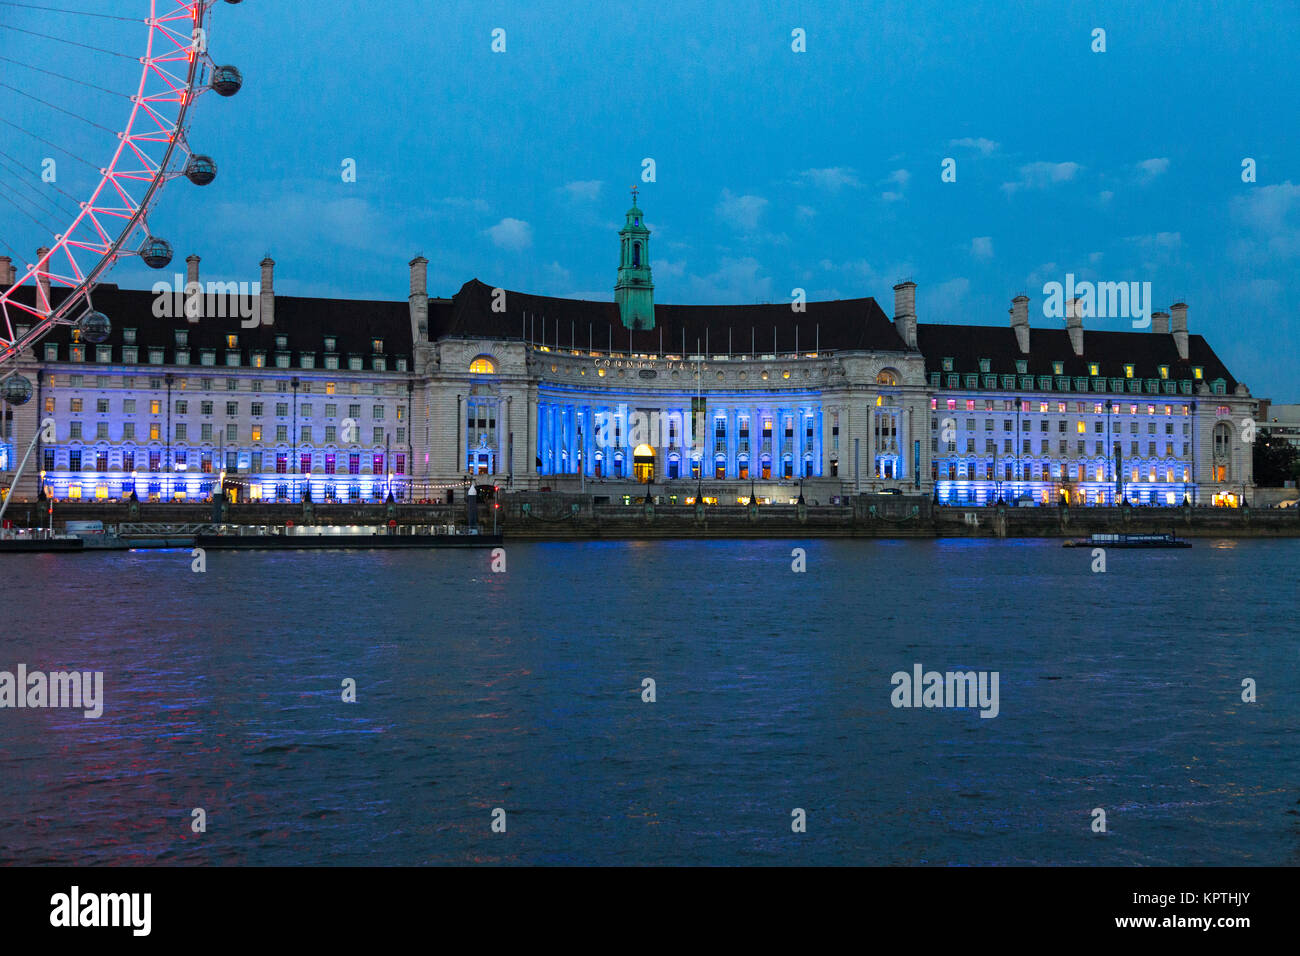 El County Hall edificio de noche, el hogar de la vida del mar el Acuario de Londres, Londres, Reino Unido. Foto de stock